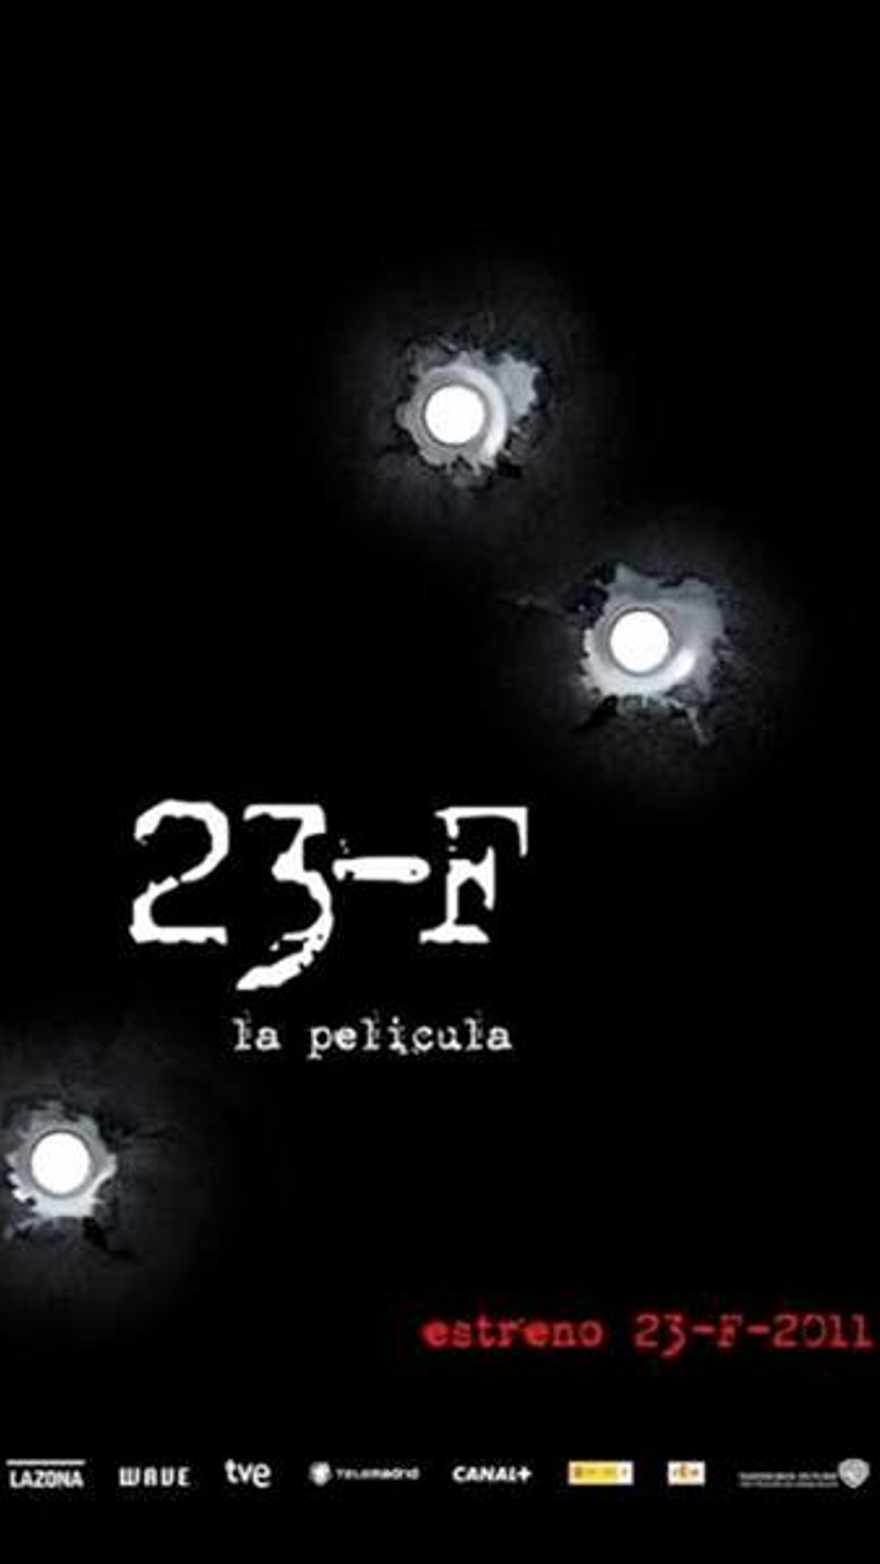 23-F: La película